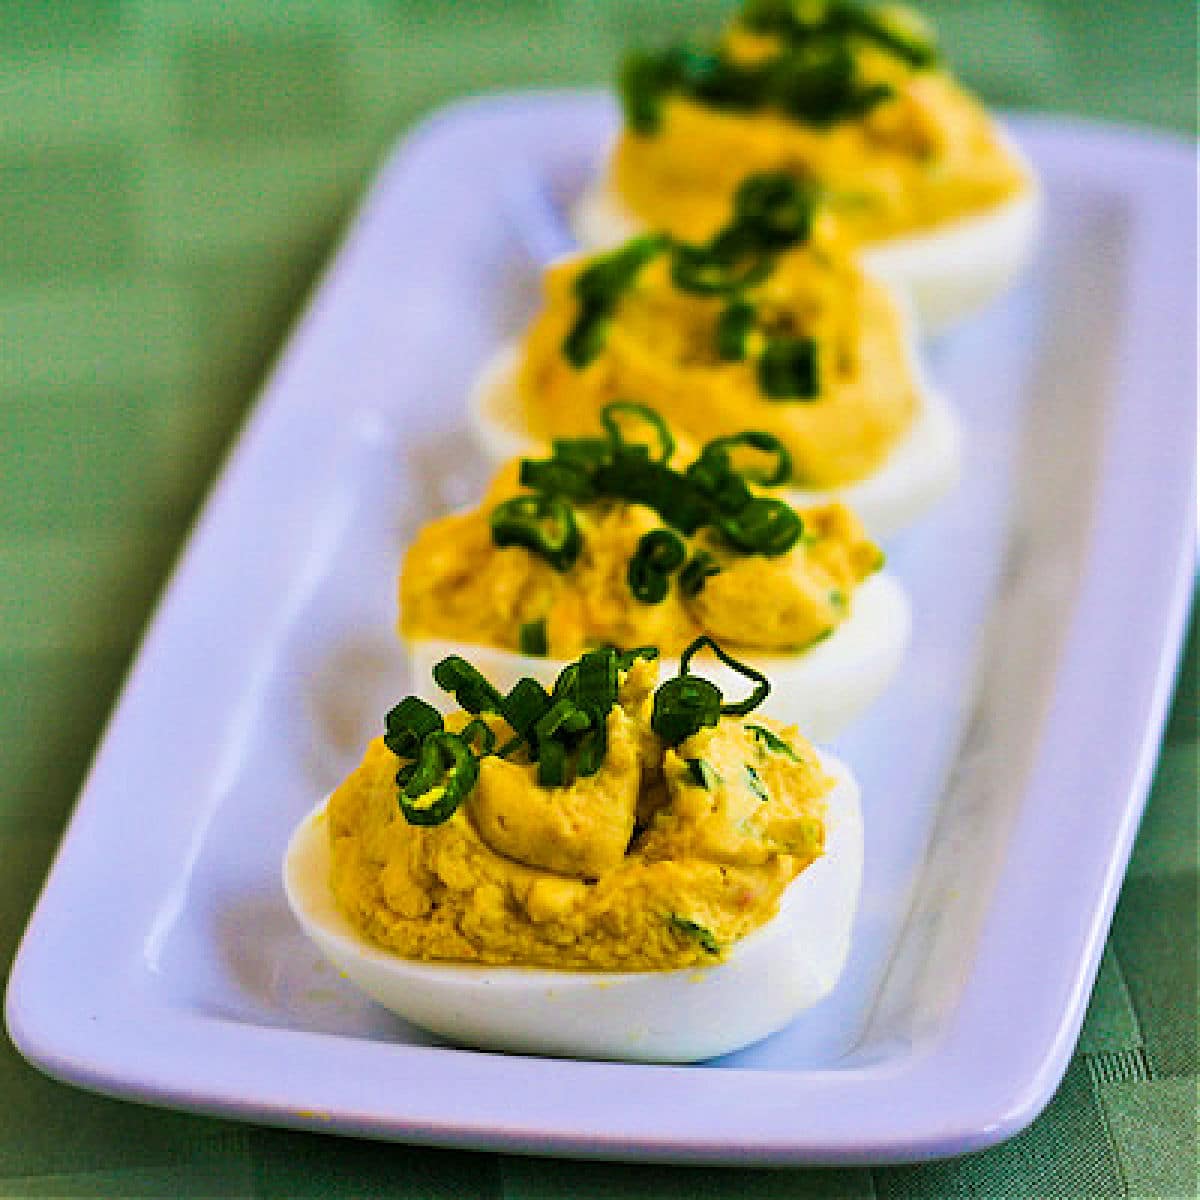 Shrimp Deviled Eggs shown on serving plate.